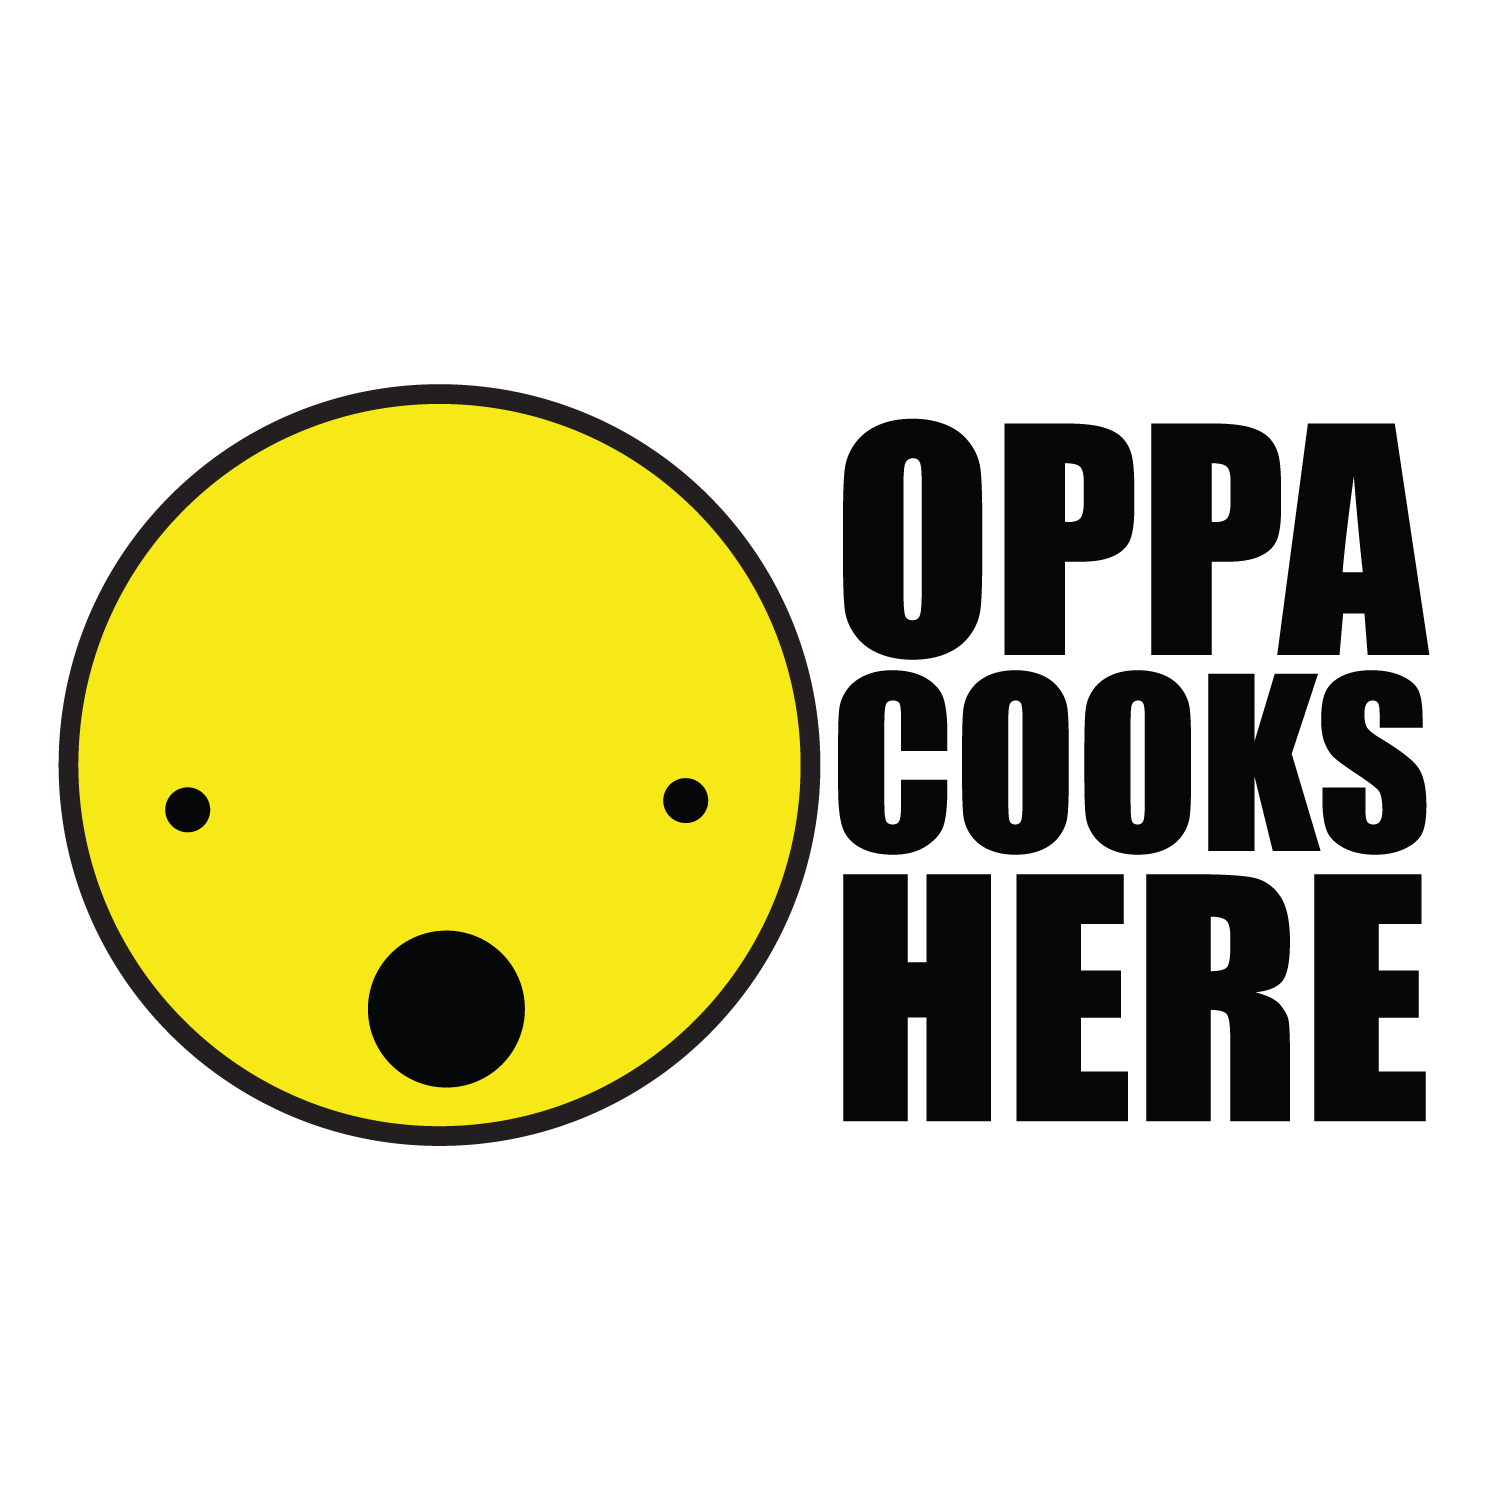 OPPA COOKS HERE